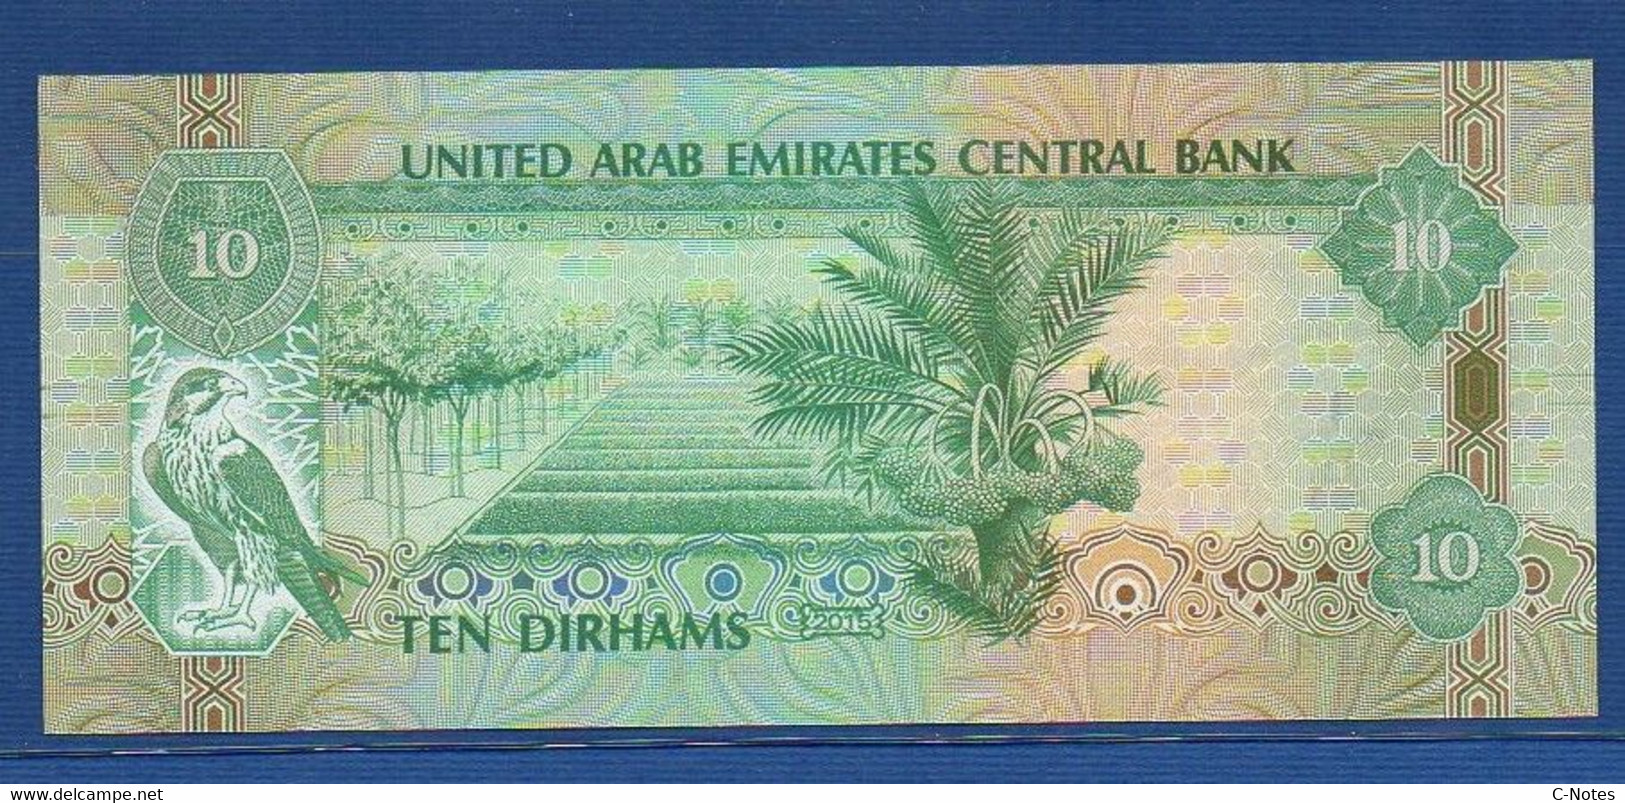 UNITED ARAB EMIRATES - P.27d – 10 DIRHAMS 2015 UNC Serie 158831182 - United Arab Emirates